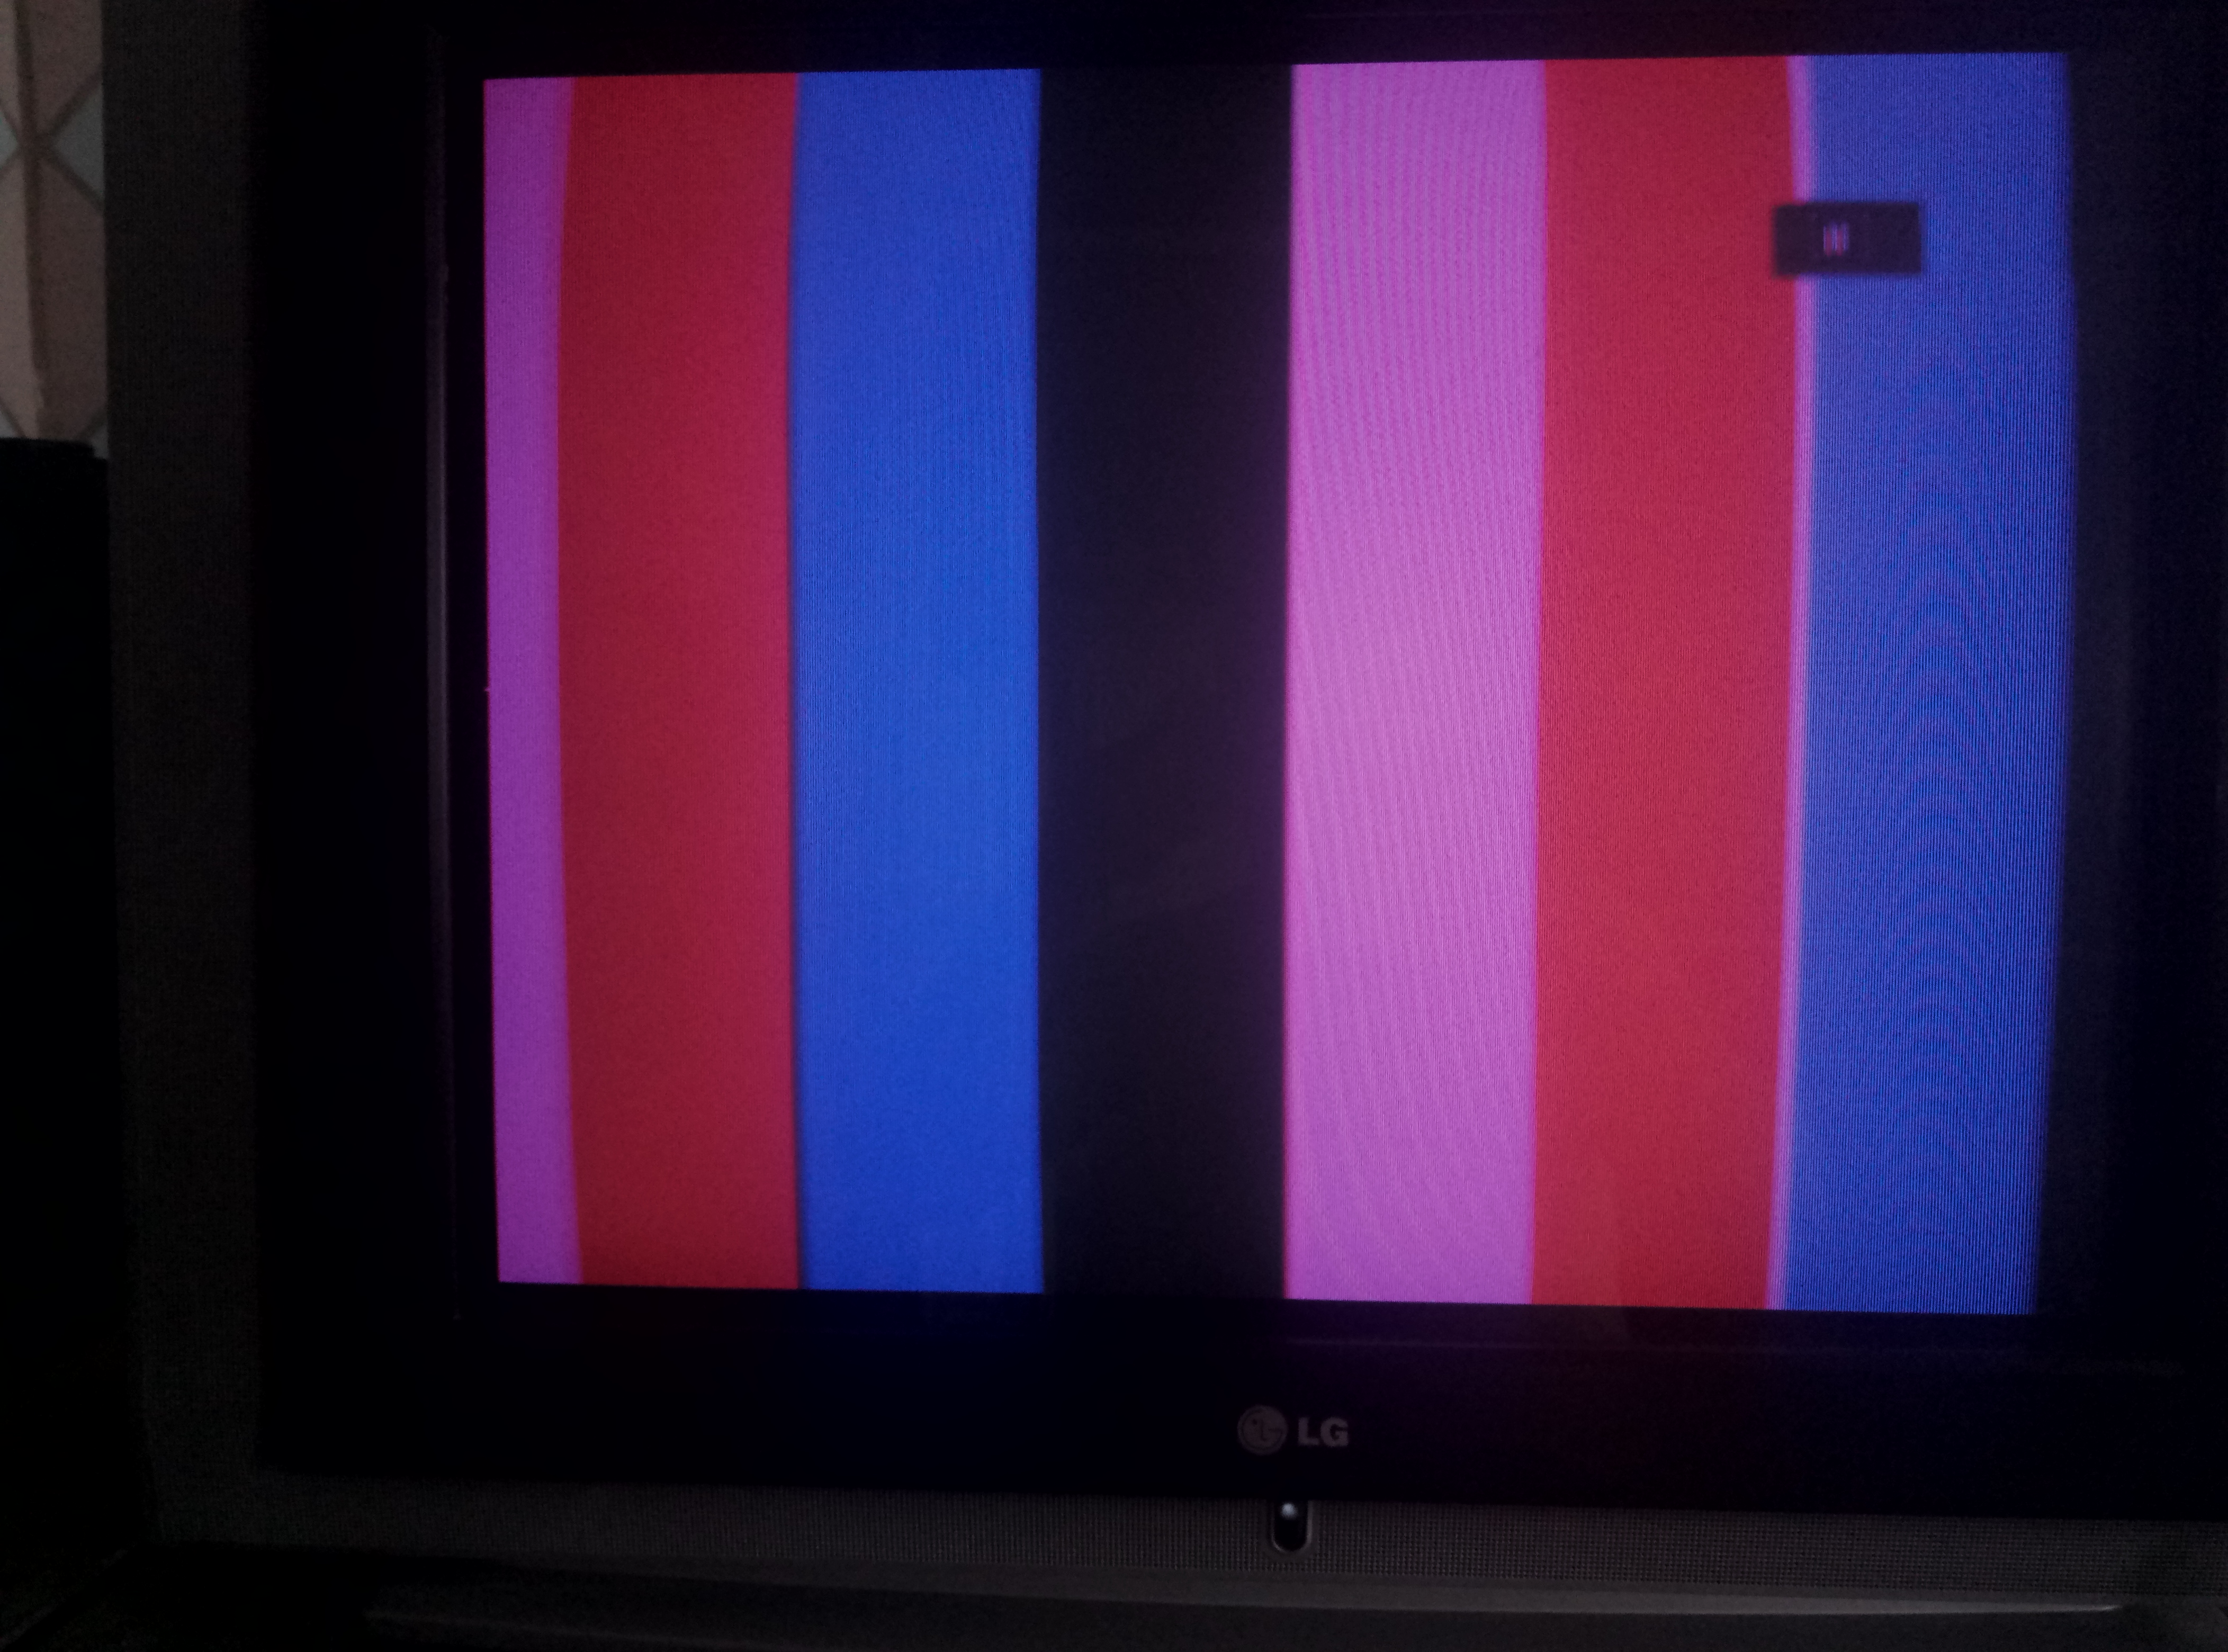 Телевизор lg синие цвета. LG 29fs6rnx. LG 29 кинескоп. Шасси:cw71a. LG 29fx6anx.